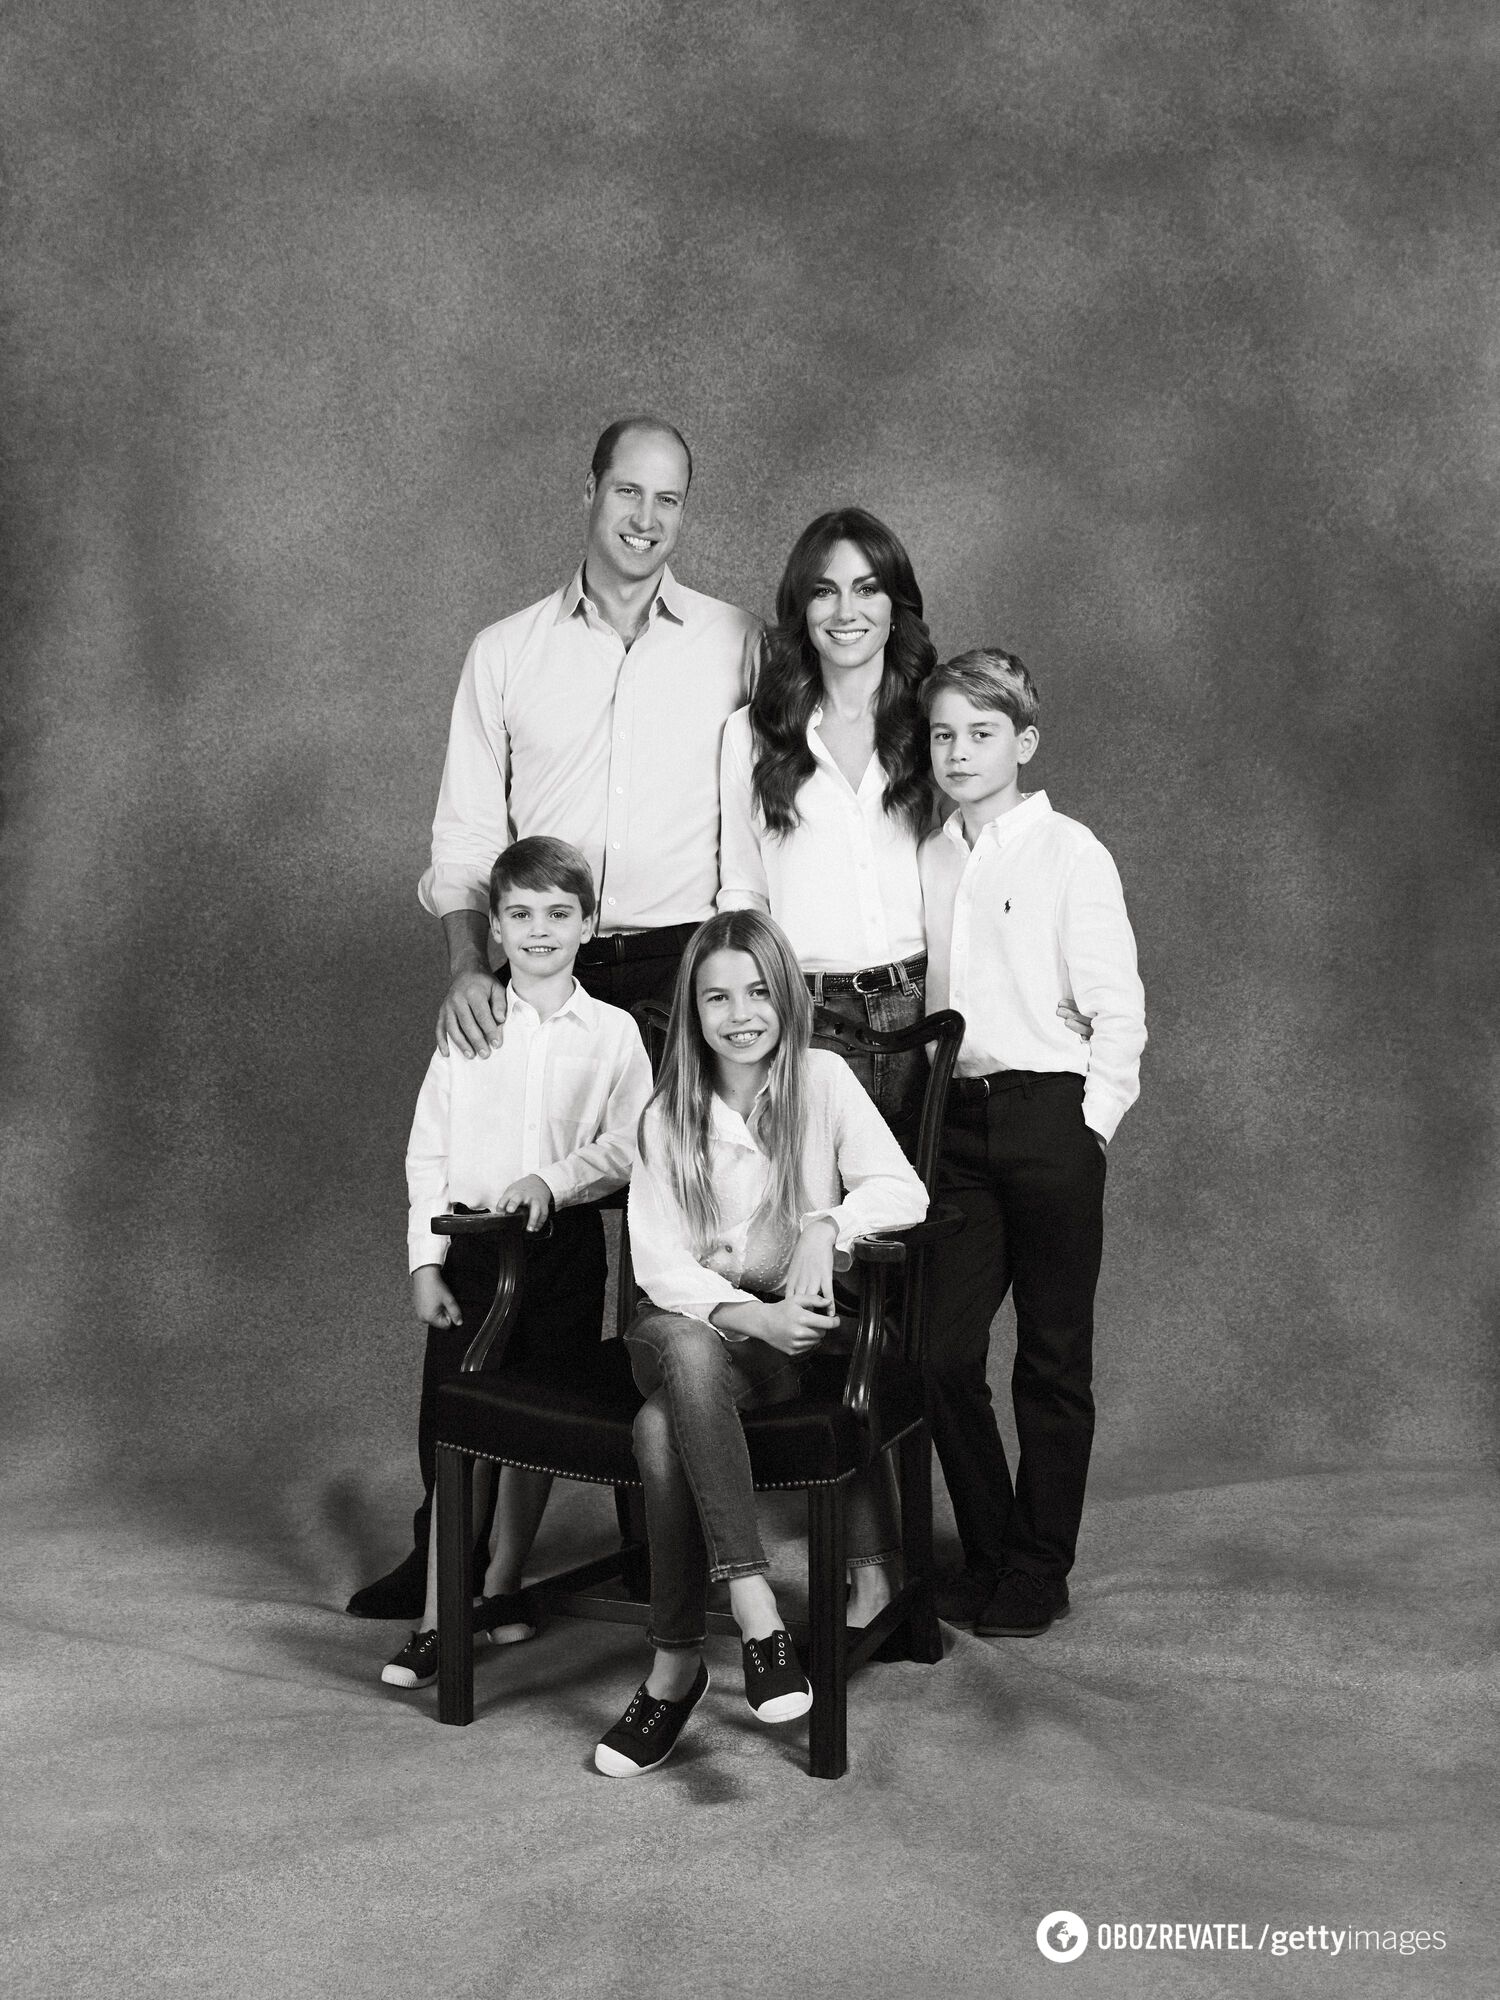 Fotograf Kate Middleton i księcia Williama skomentował pocztówkę z Louisem ''bez środkowego palca'' i pokazał, jak powinno wyglądać zdjęcie